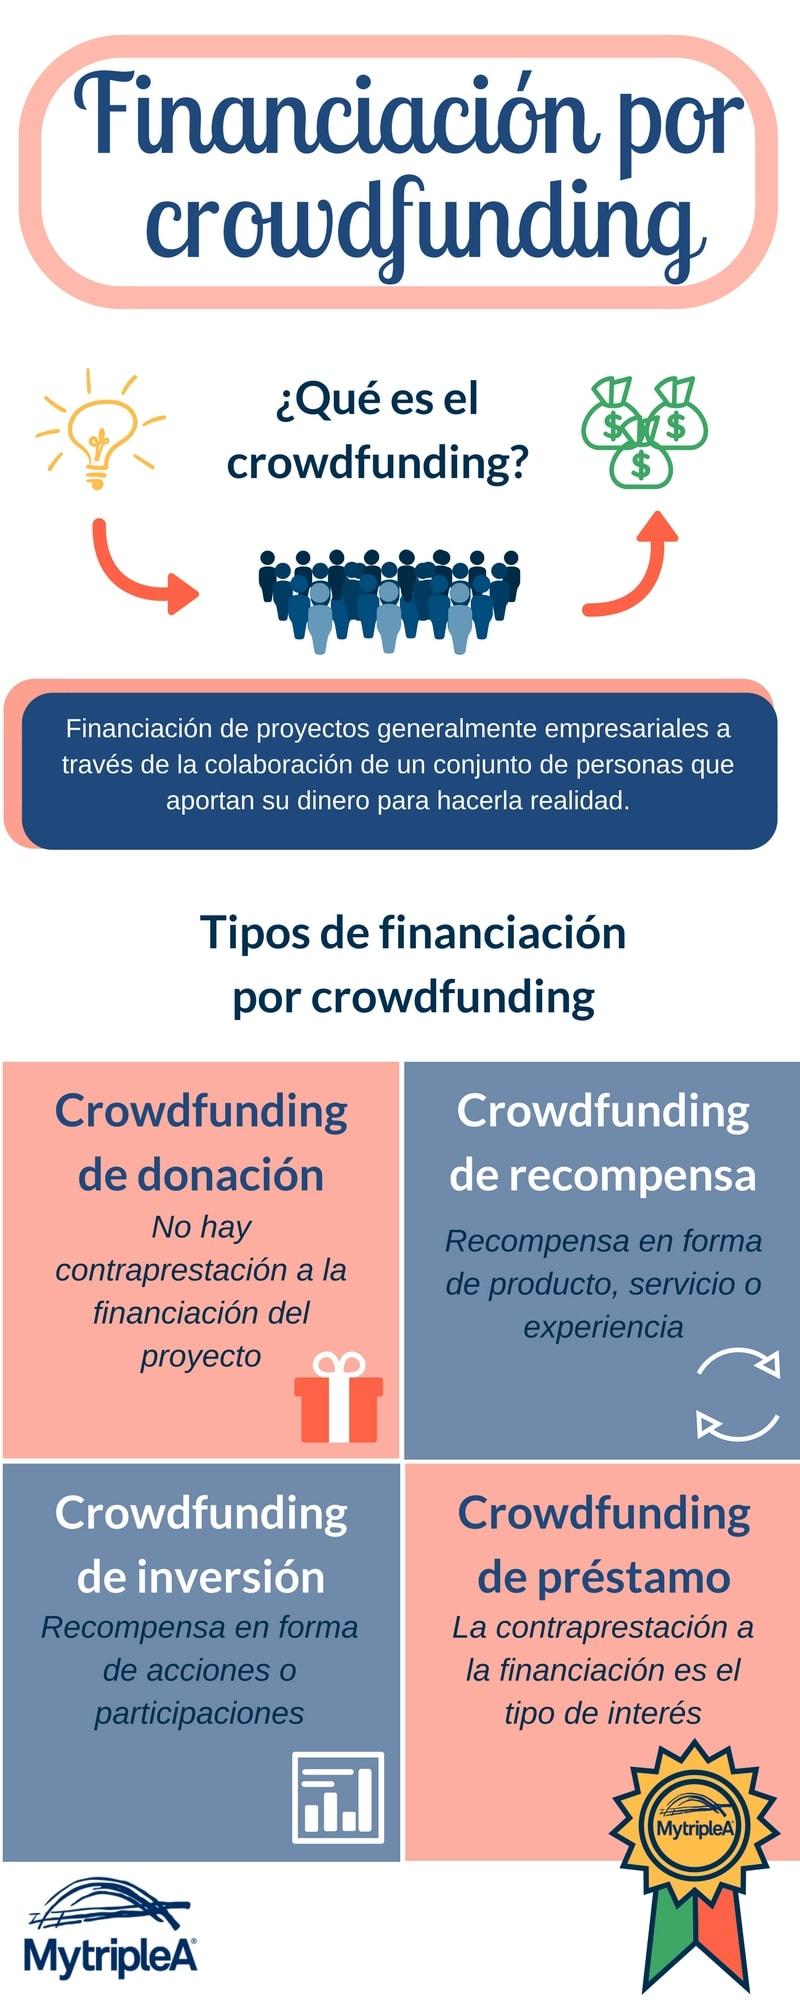 Financiación crowdfunding infografía